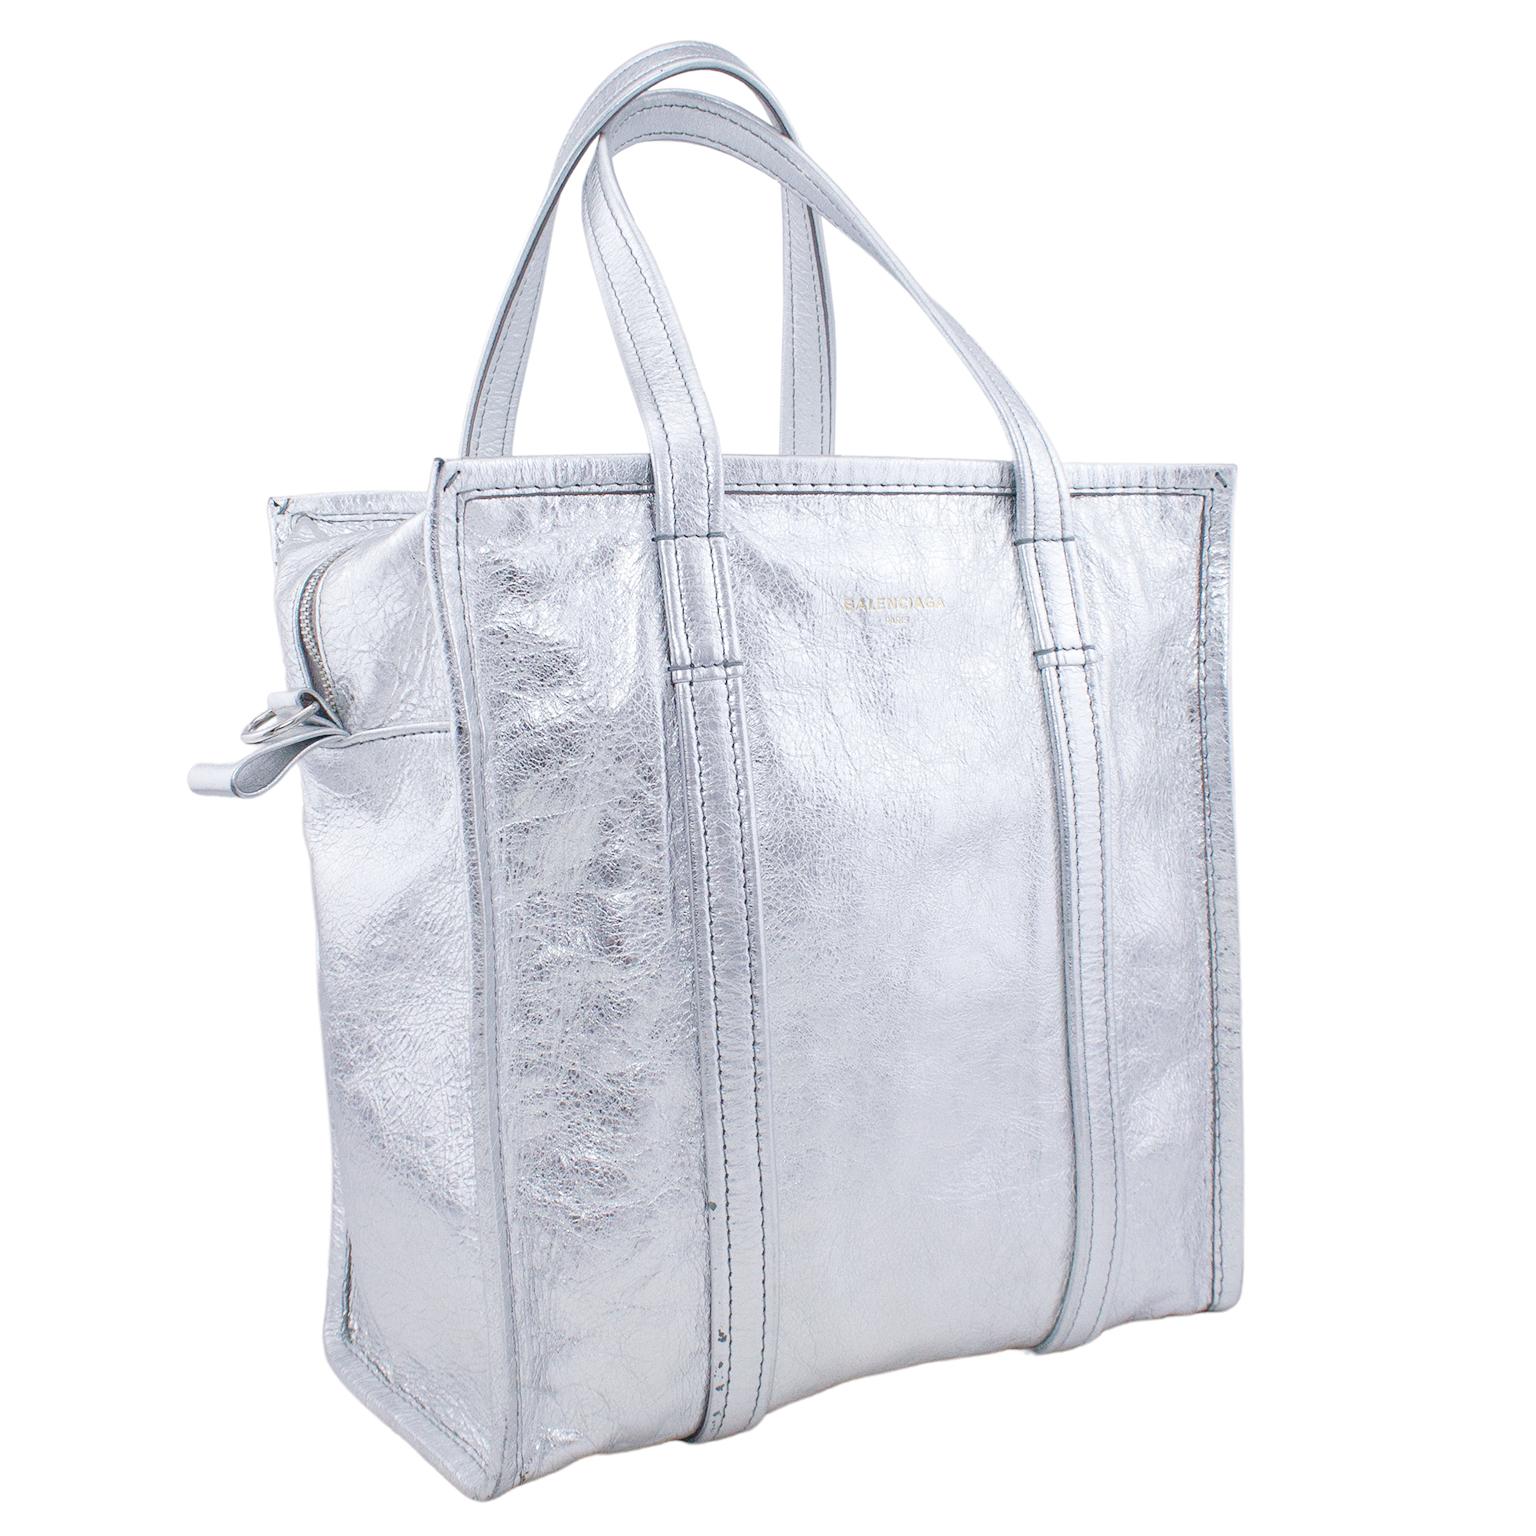 Si vous êtes à la recherche du sac idéal à ajouter à votre collection, ce sac à main argenté Aaj Bazar Shopper Tote est fait pour vous. Fabriqué dans un cuir 100 % aluminium, ce fourre-tout de forme carrée est une pièce minimale qui ne manque pas